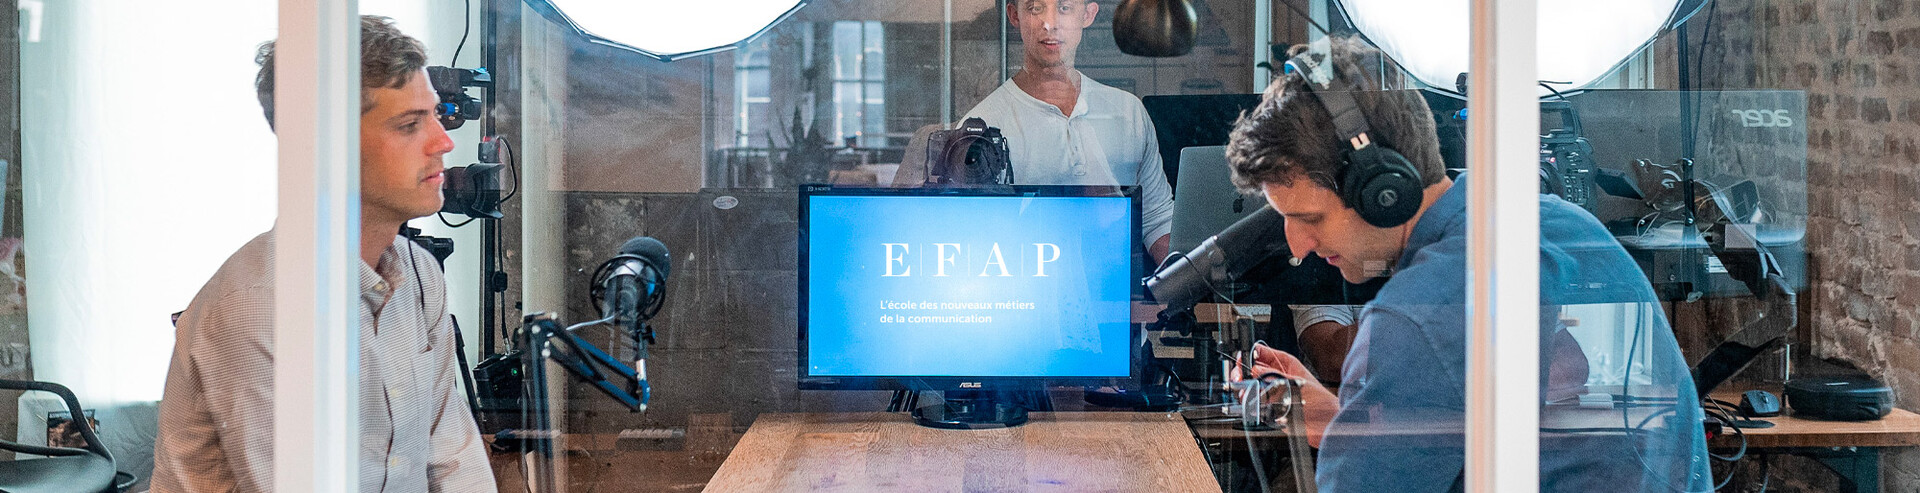 Ecole attaché de presse - Formation attachées de presse EFAP